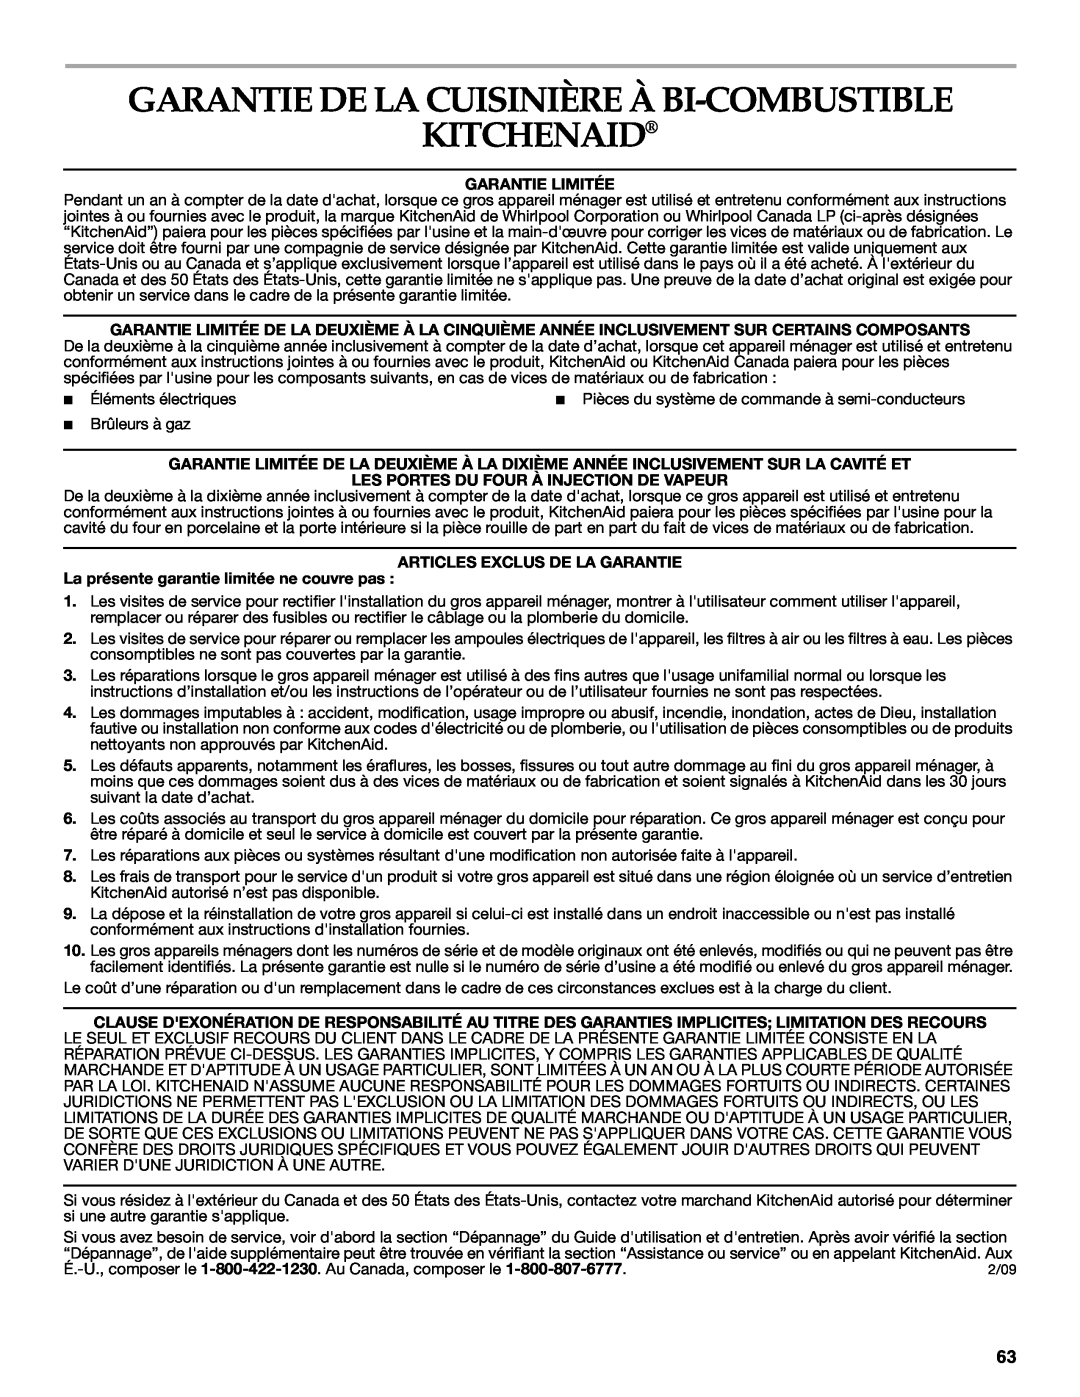 KitchenAid KDRS407 Garantie De La Cuisinière À Bi-Combustible Kitchenaid, Garantie Limitée, Articles Exclus De La Garantie 